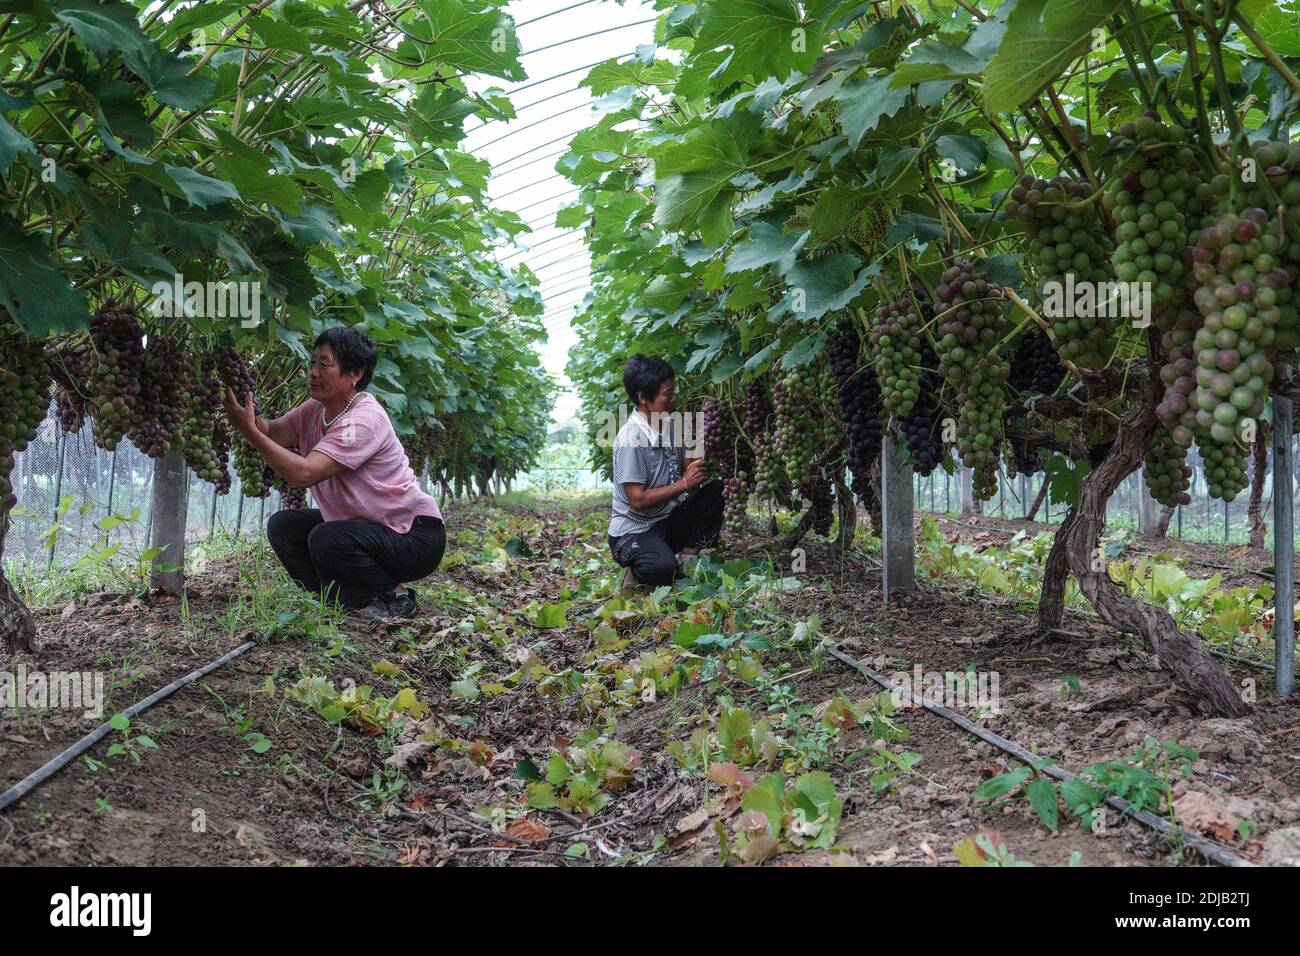 (201214) -- PEKING, 14. Dezember 2020 (Xinhua) -- Bauern arbeiten auf einer Gemüse-Obst-Pflanzfarm in Chenji Stadt der Stadt Suqian, Ost-Chinas Provinz Jiangsu, 18. Juli 2020. China hat alle seine 832 verarmten Landkreise landesweit von der Armutsliste entfernt. Die Entwicklungsländer haben eine wichtige Rolle bei den Bemühungen des Landes zur Armutsbekämpfung gespielt, die nach wie vor von grundlegender Bedeutung sein werden, um die Erfolge bei der Armutsbekämpfung kontinuierlich zu konsolidieren. Statistiken des chinesischen Ministeriums für Landwirtschaft und ländliche Angelegenheiten zeigen, dass alle 832 verarmten Landkreise mehr als eine Million durchgeführt haben Stockfoto